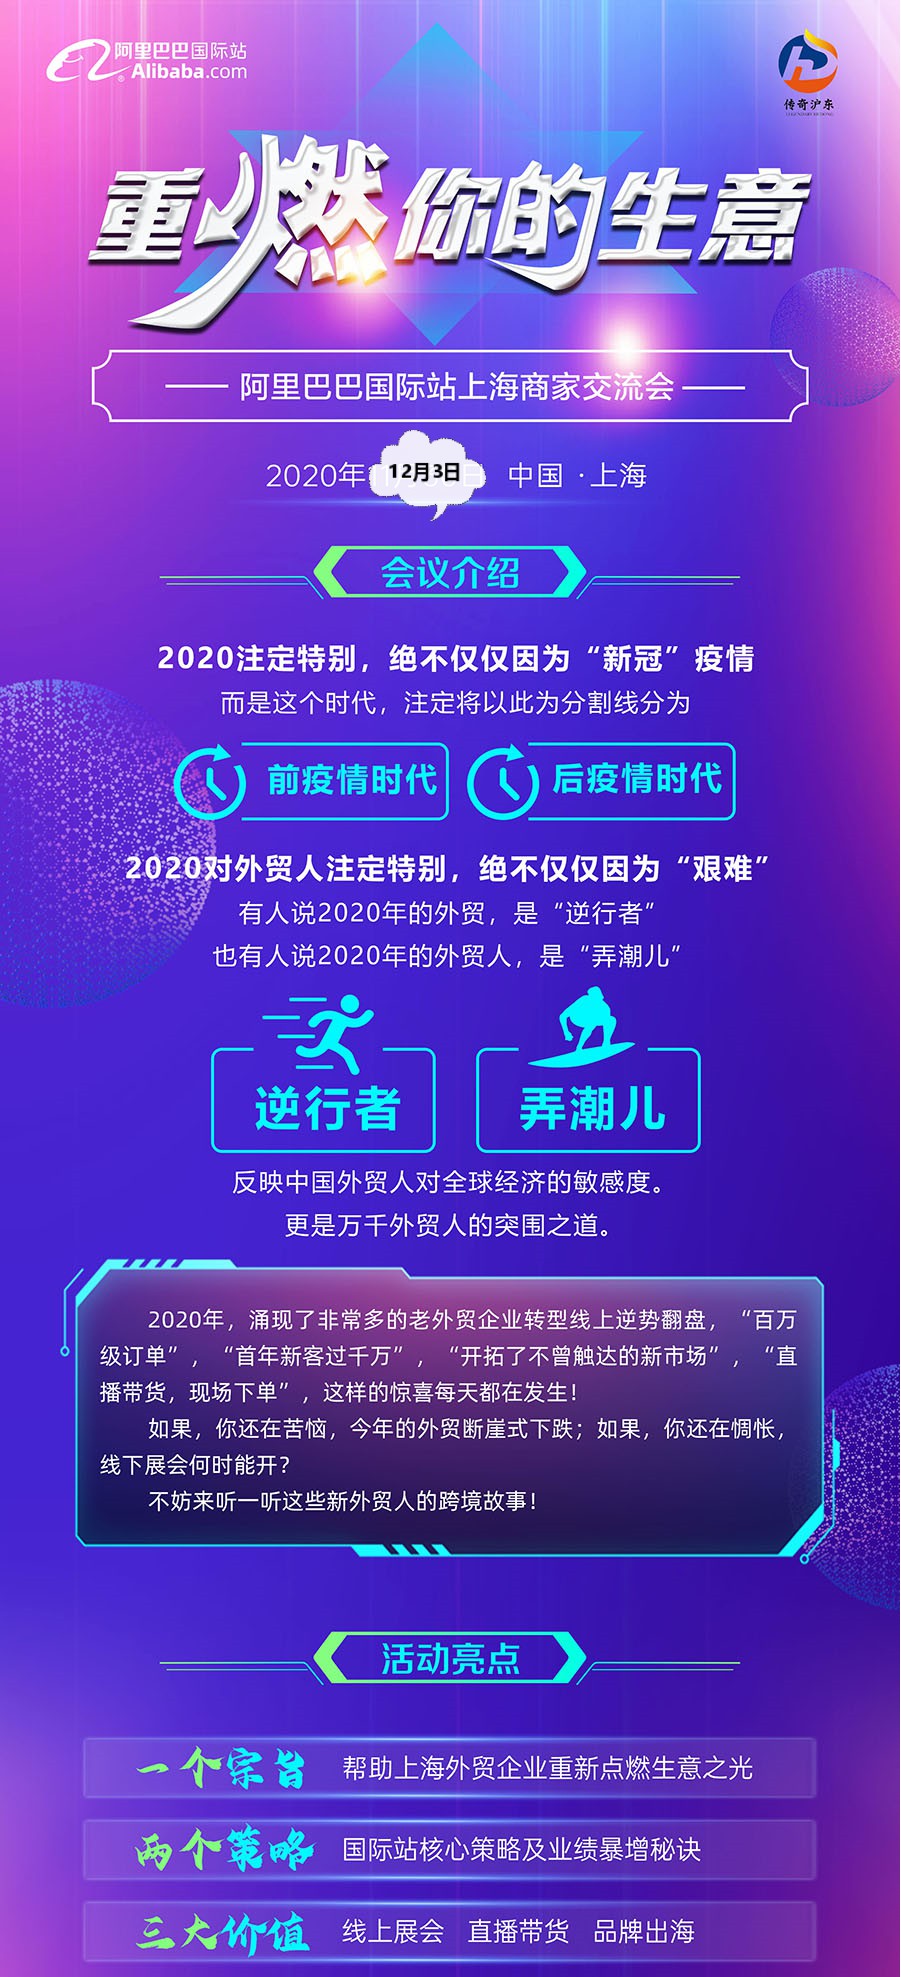 2020阿里巴巴上海外贸商家交流会